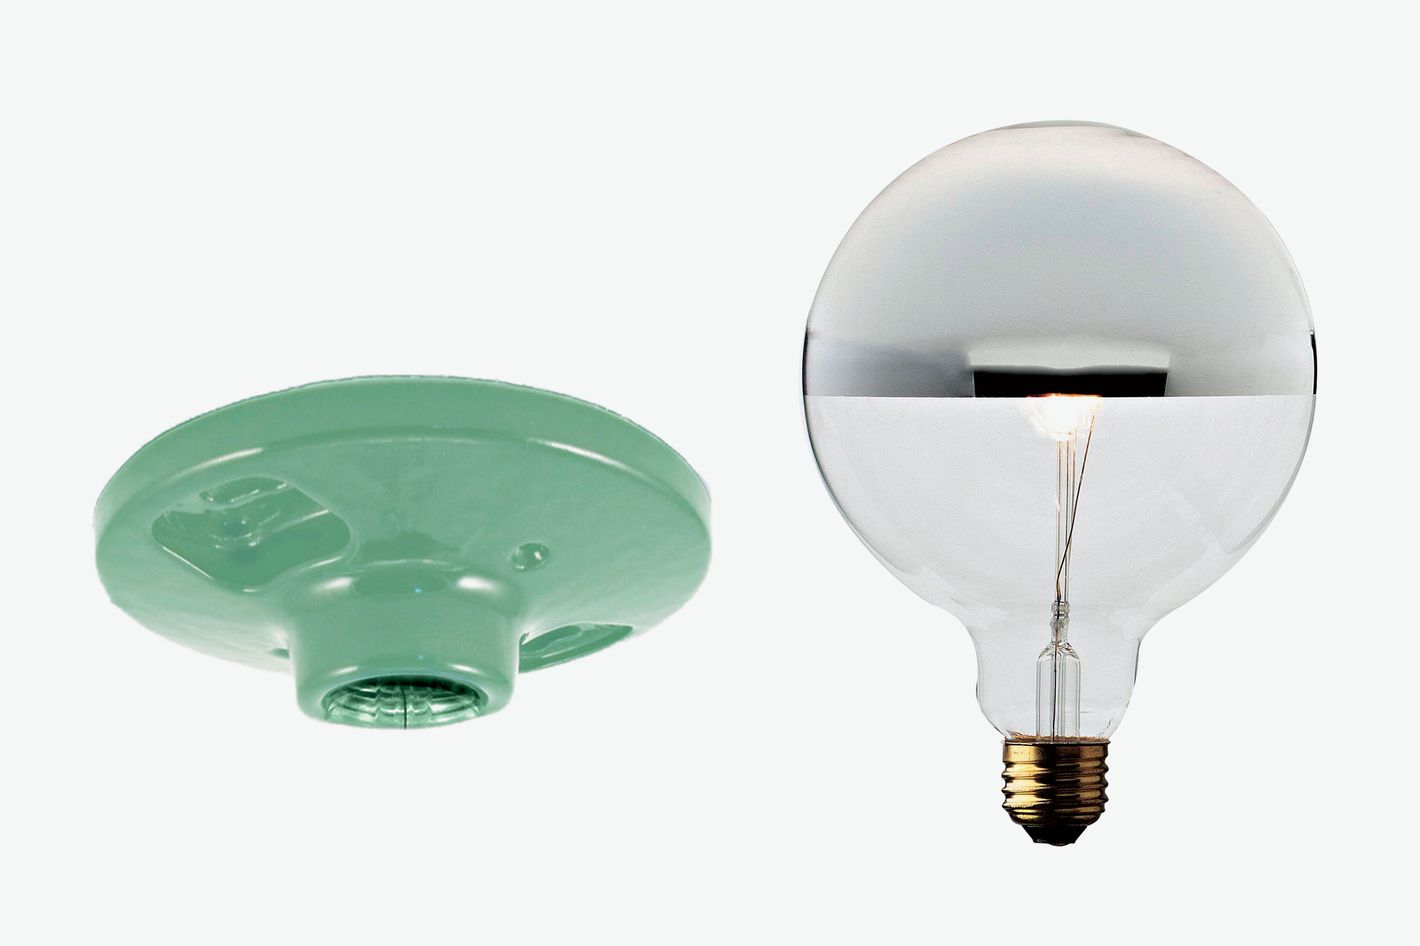 Commune socket and chrome bulb